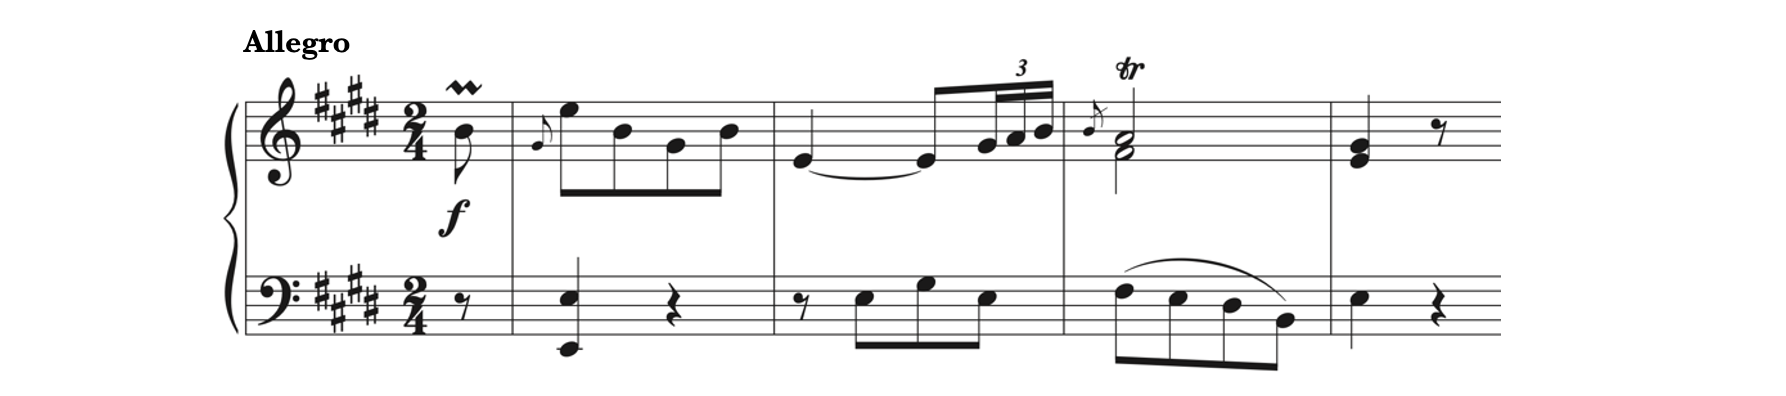 Ornaments in Martinez's Piano Sonata in E Major, first movement - Allegro. There is a mordent, appoggiaturas, and a trill.